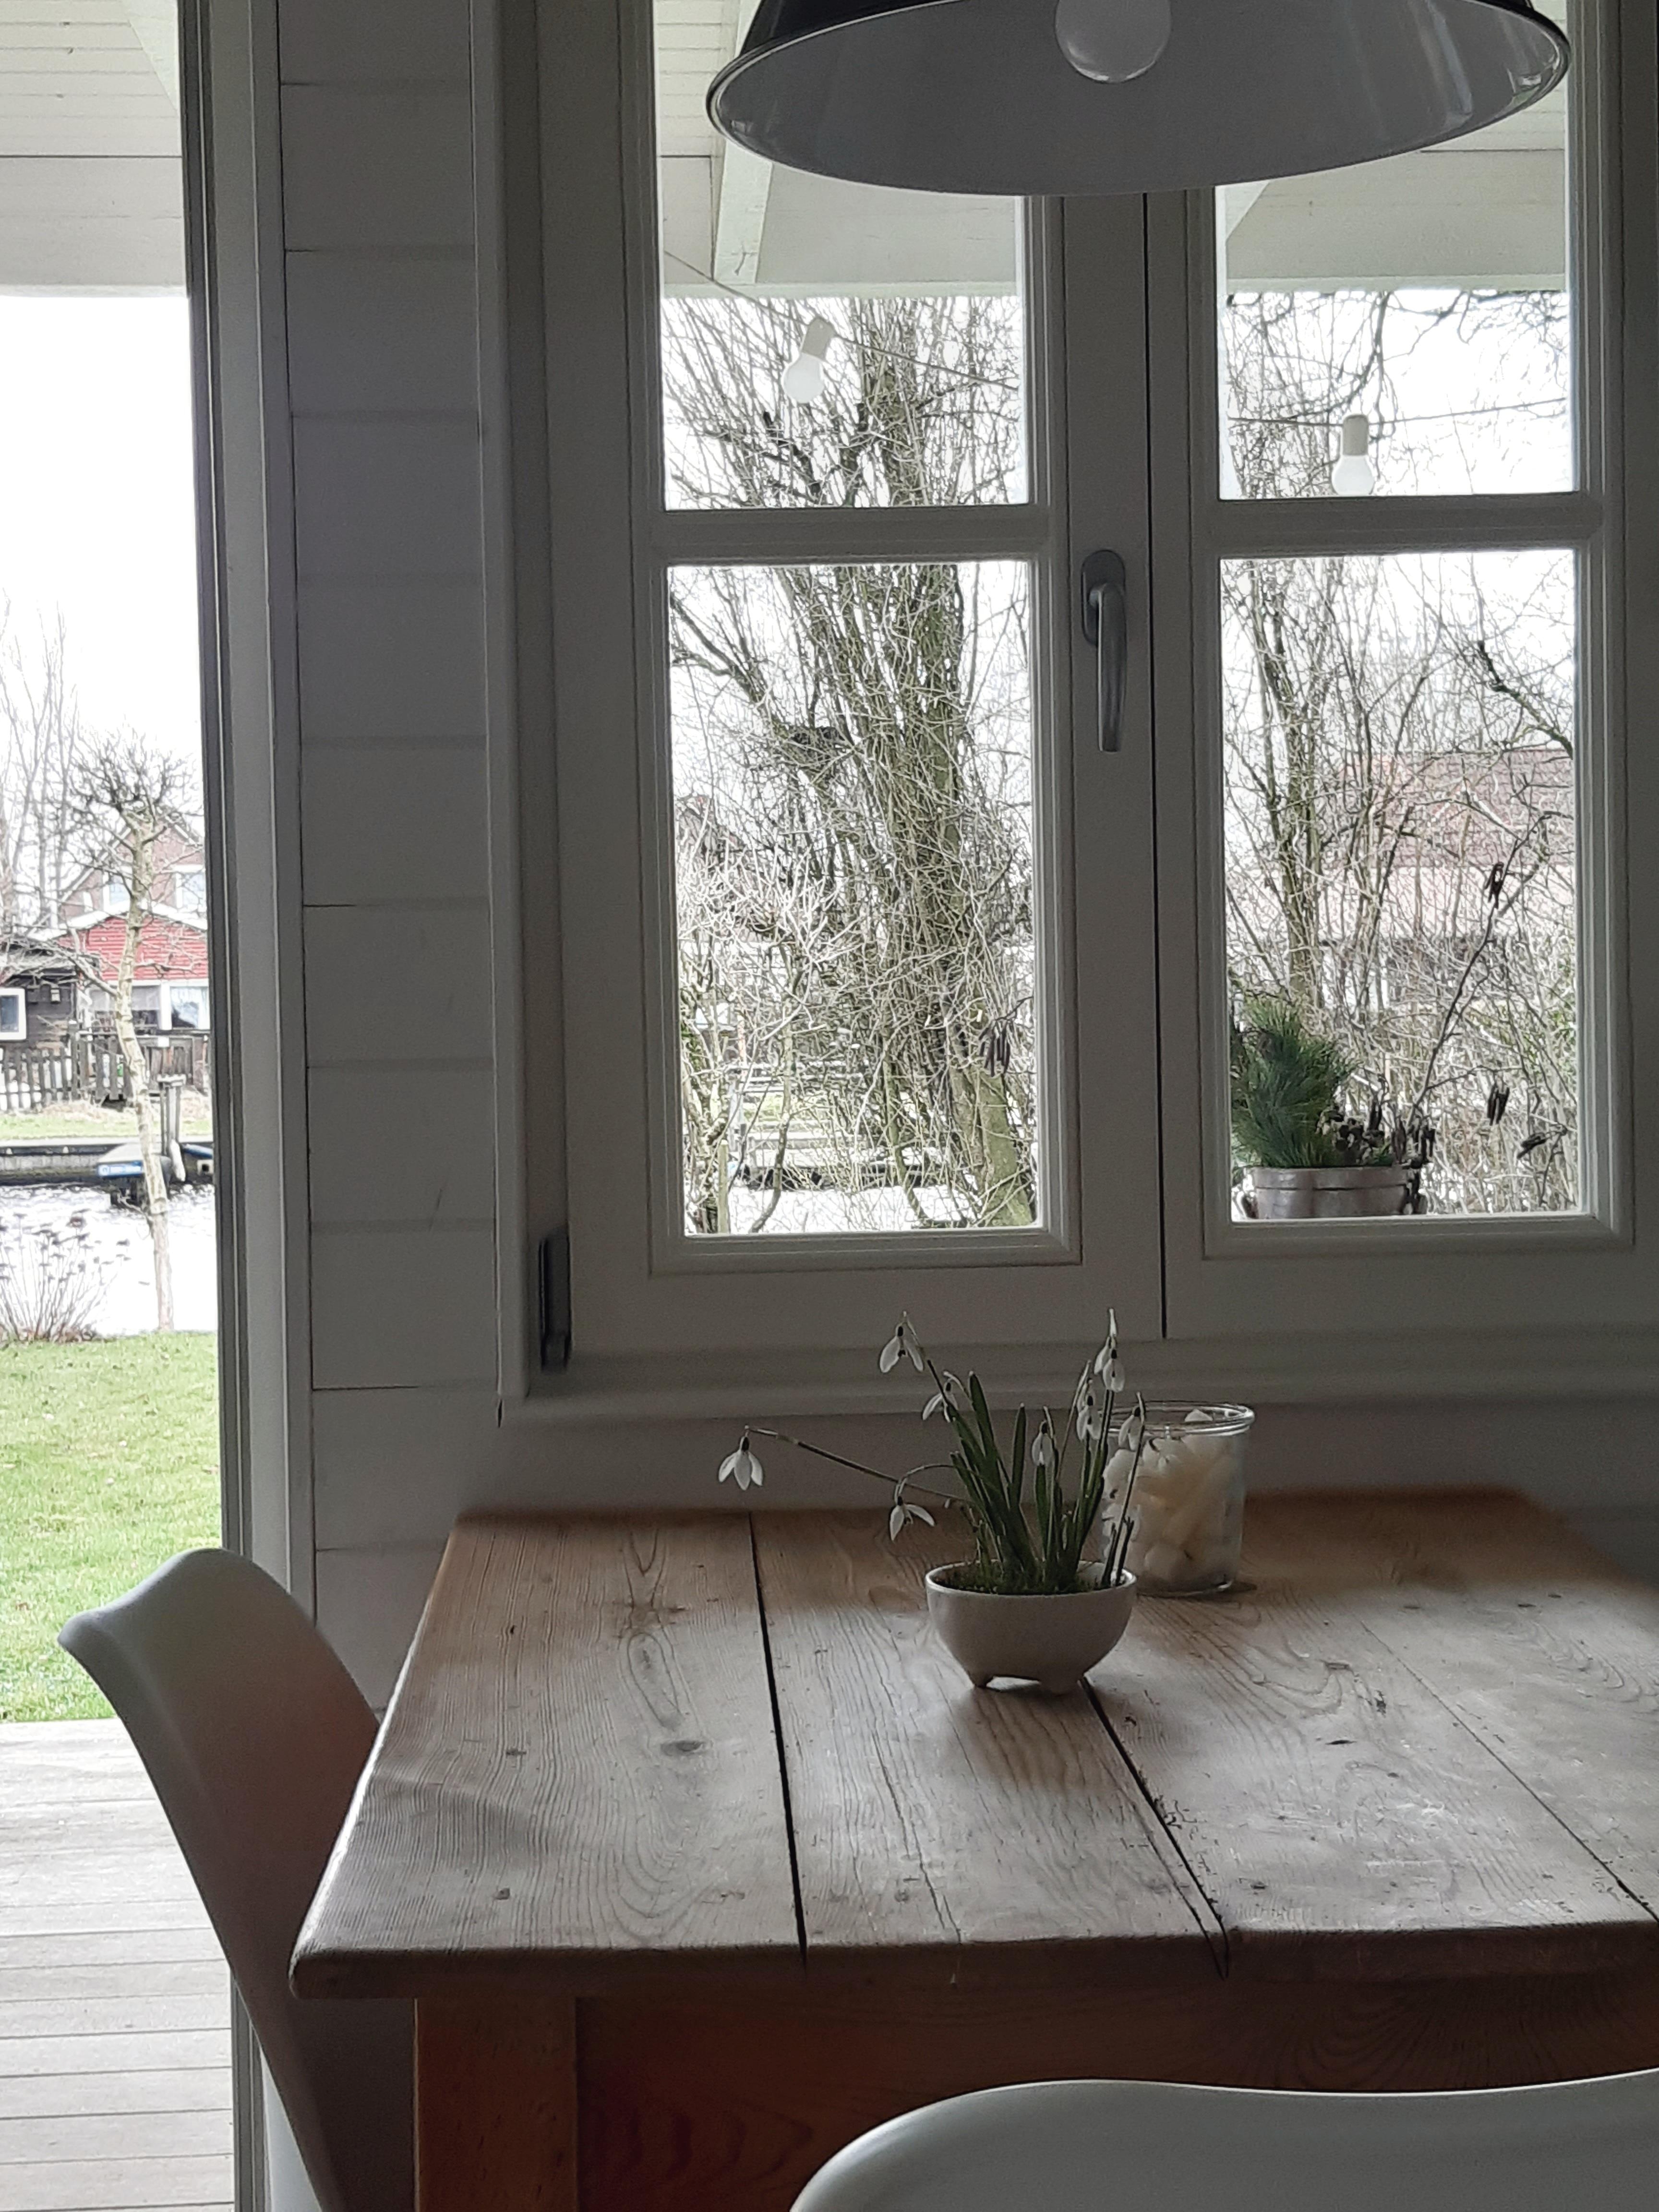 Erste Schneeglöckchen rein geholt...blasse Zeit...aber der Blick aufs Wasser ist immer schön #couchstyle #Küche #kleineküche #blumendeko #interior #skandinavisch